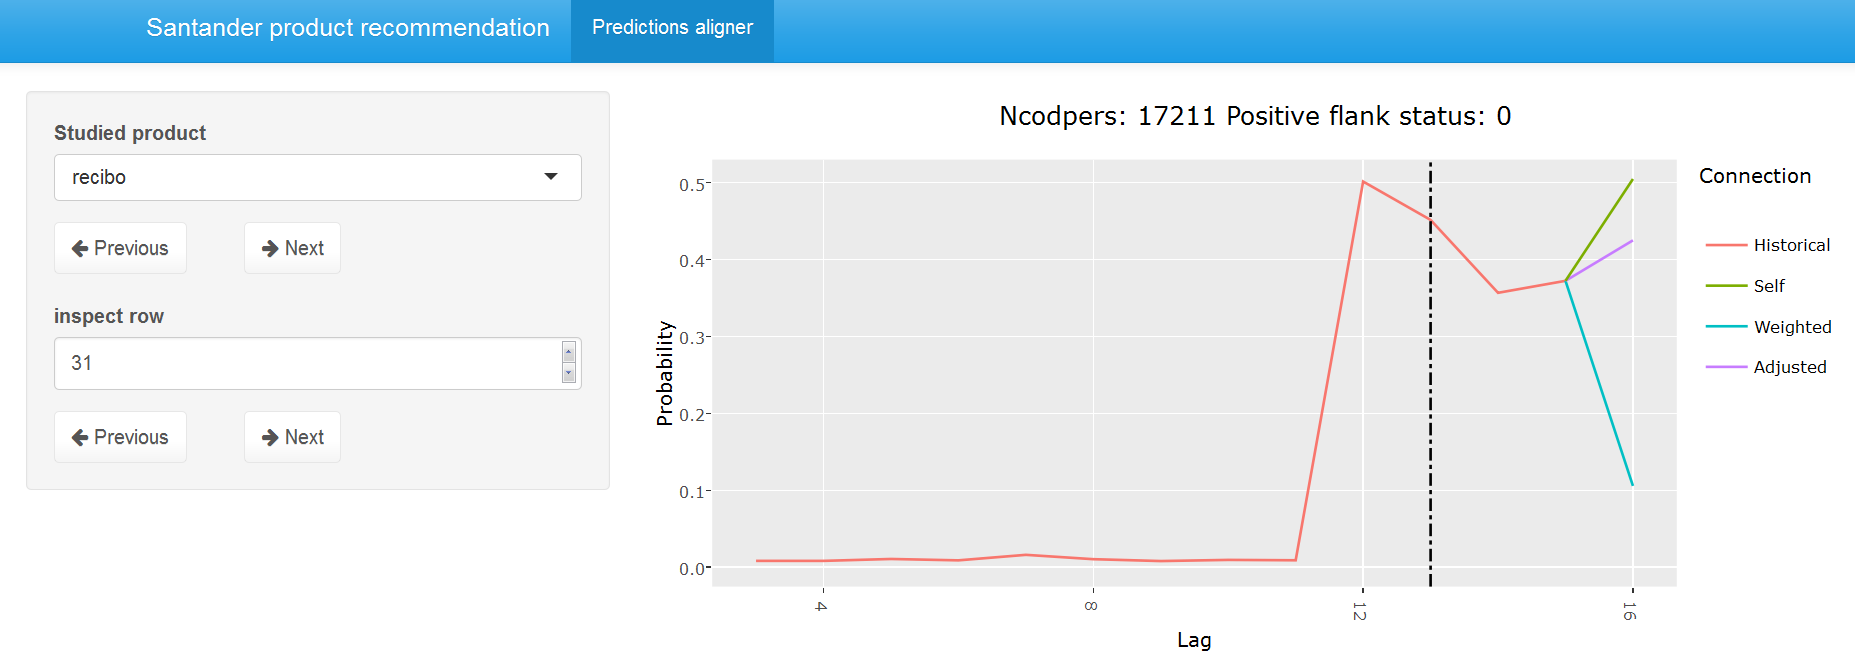 Base model recibo predictions comparison for user 17211